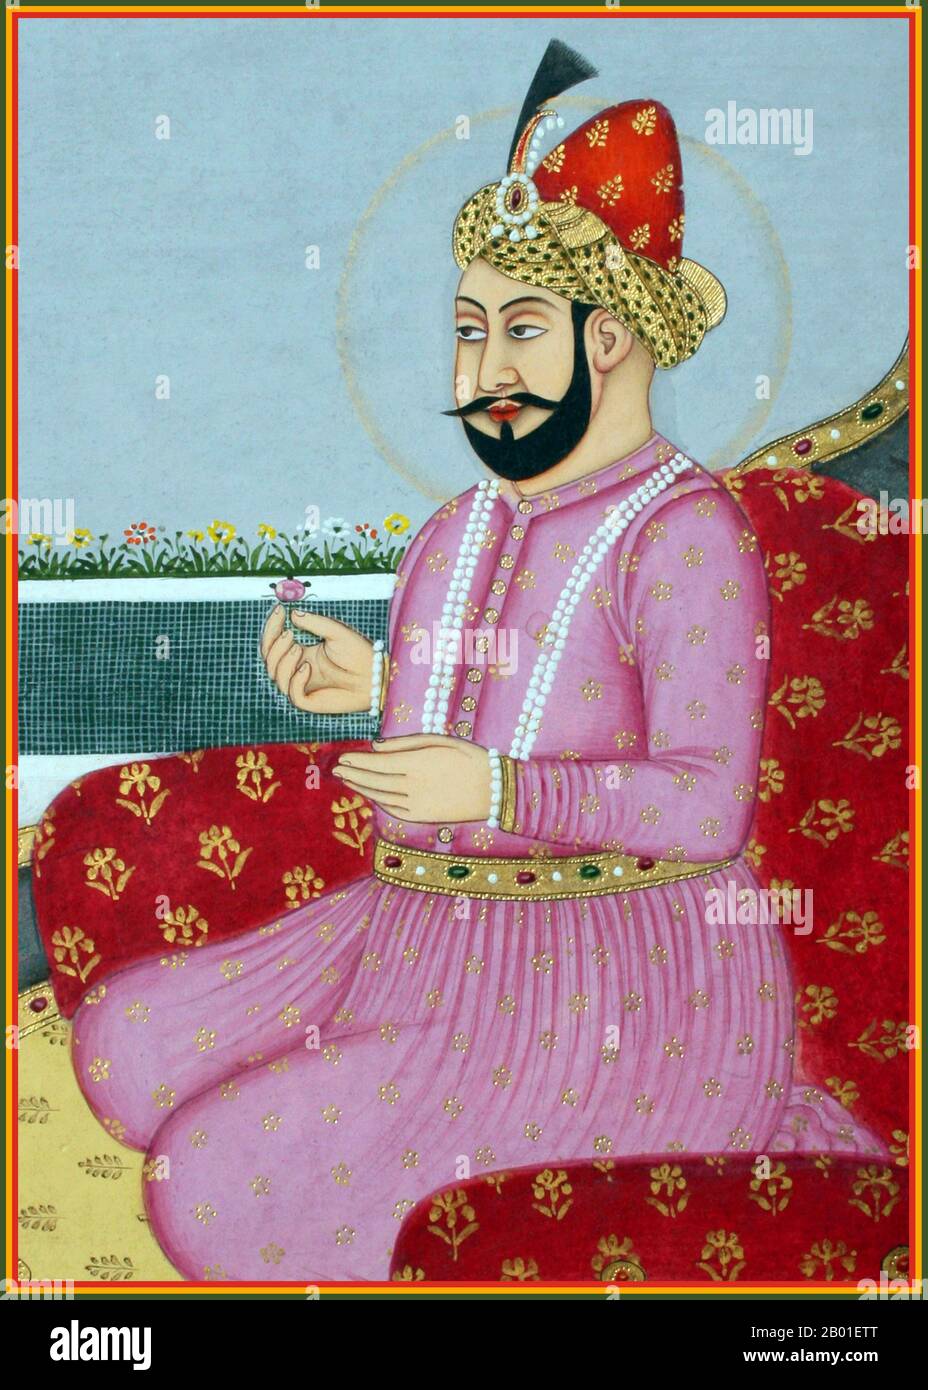 Inde: Nasir ud-din Muhammad Humayun (7 mars 1508 - 22 février 1556), 2nd Empereur Mughal, agenouillé sur un trône. Peinture miniature d'une série représentant les empereurs de Mughal, 18th siècle. Humayun (titre complet: Al-Sultan al-'Azam wal Khaqan al-Mukarram, Jam-i-Sultanat-i-haqiqi wa Majazi, Sayyid al-Salatin, Abu'l Muzaffar Nasir ud-din Muhammad Humayun Padshah Ghazi, Zillu'llah) était le deuxième jour de l'Afghanistan, 1530-1540, 1555, et l'empereur R. Mughal, 1556, le deuxième jour de l'Afghanistan, le Pakistan,, et le, le. Comme son père, Babur, il a perdu son royaume tôt, mais l'a retrouvé avec l'aide persane. Banque D'Images